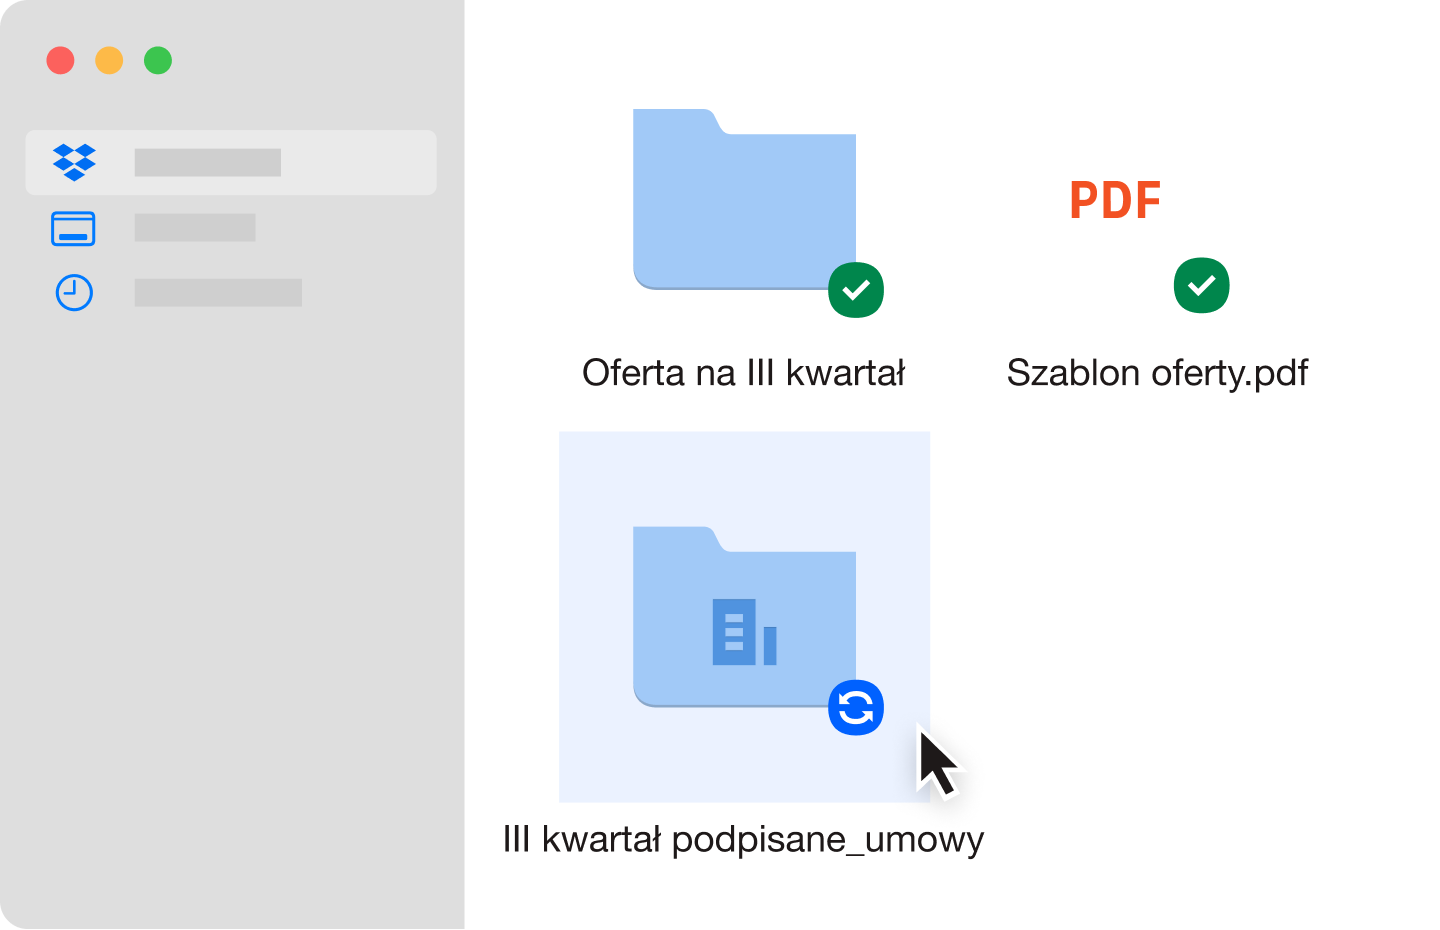 Dwa niebieskie foldery plików i plik PDF, które zostały zsynchronizowane na koncie Dropbox